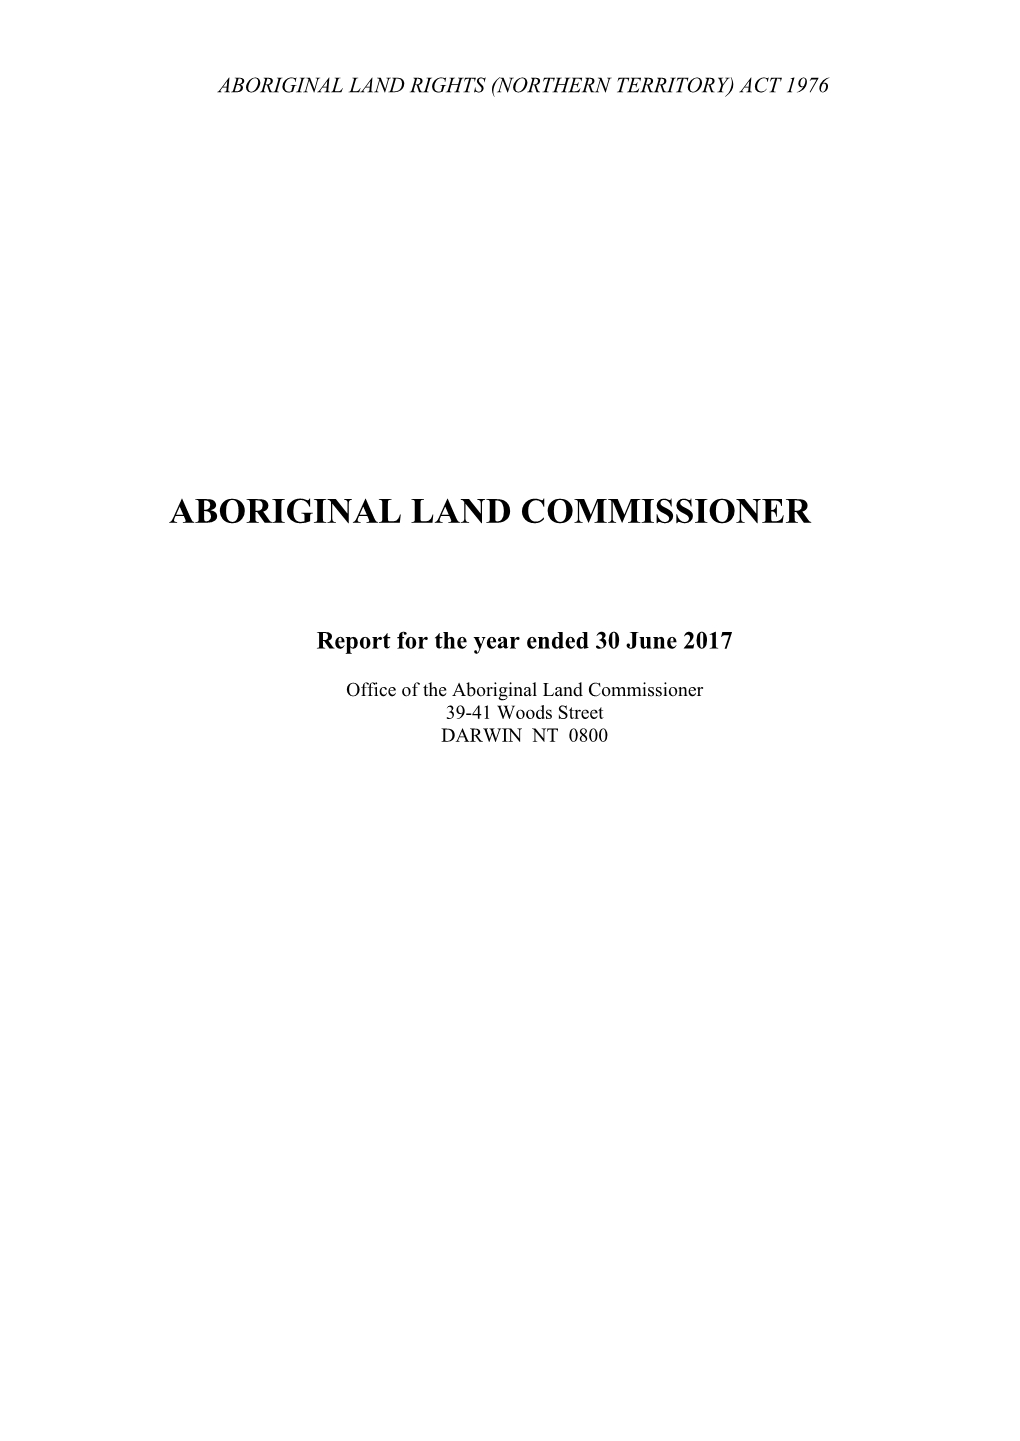 Aboriginal Land Commissioner Annual Report 2017